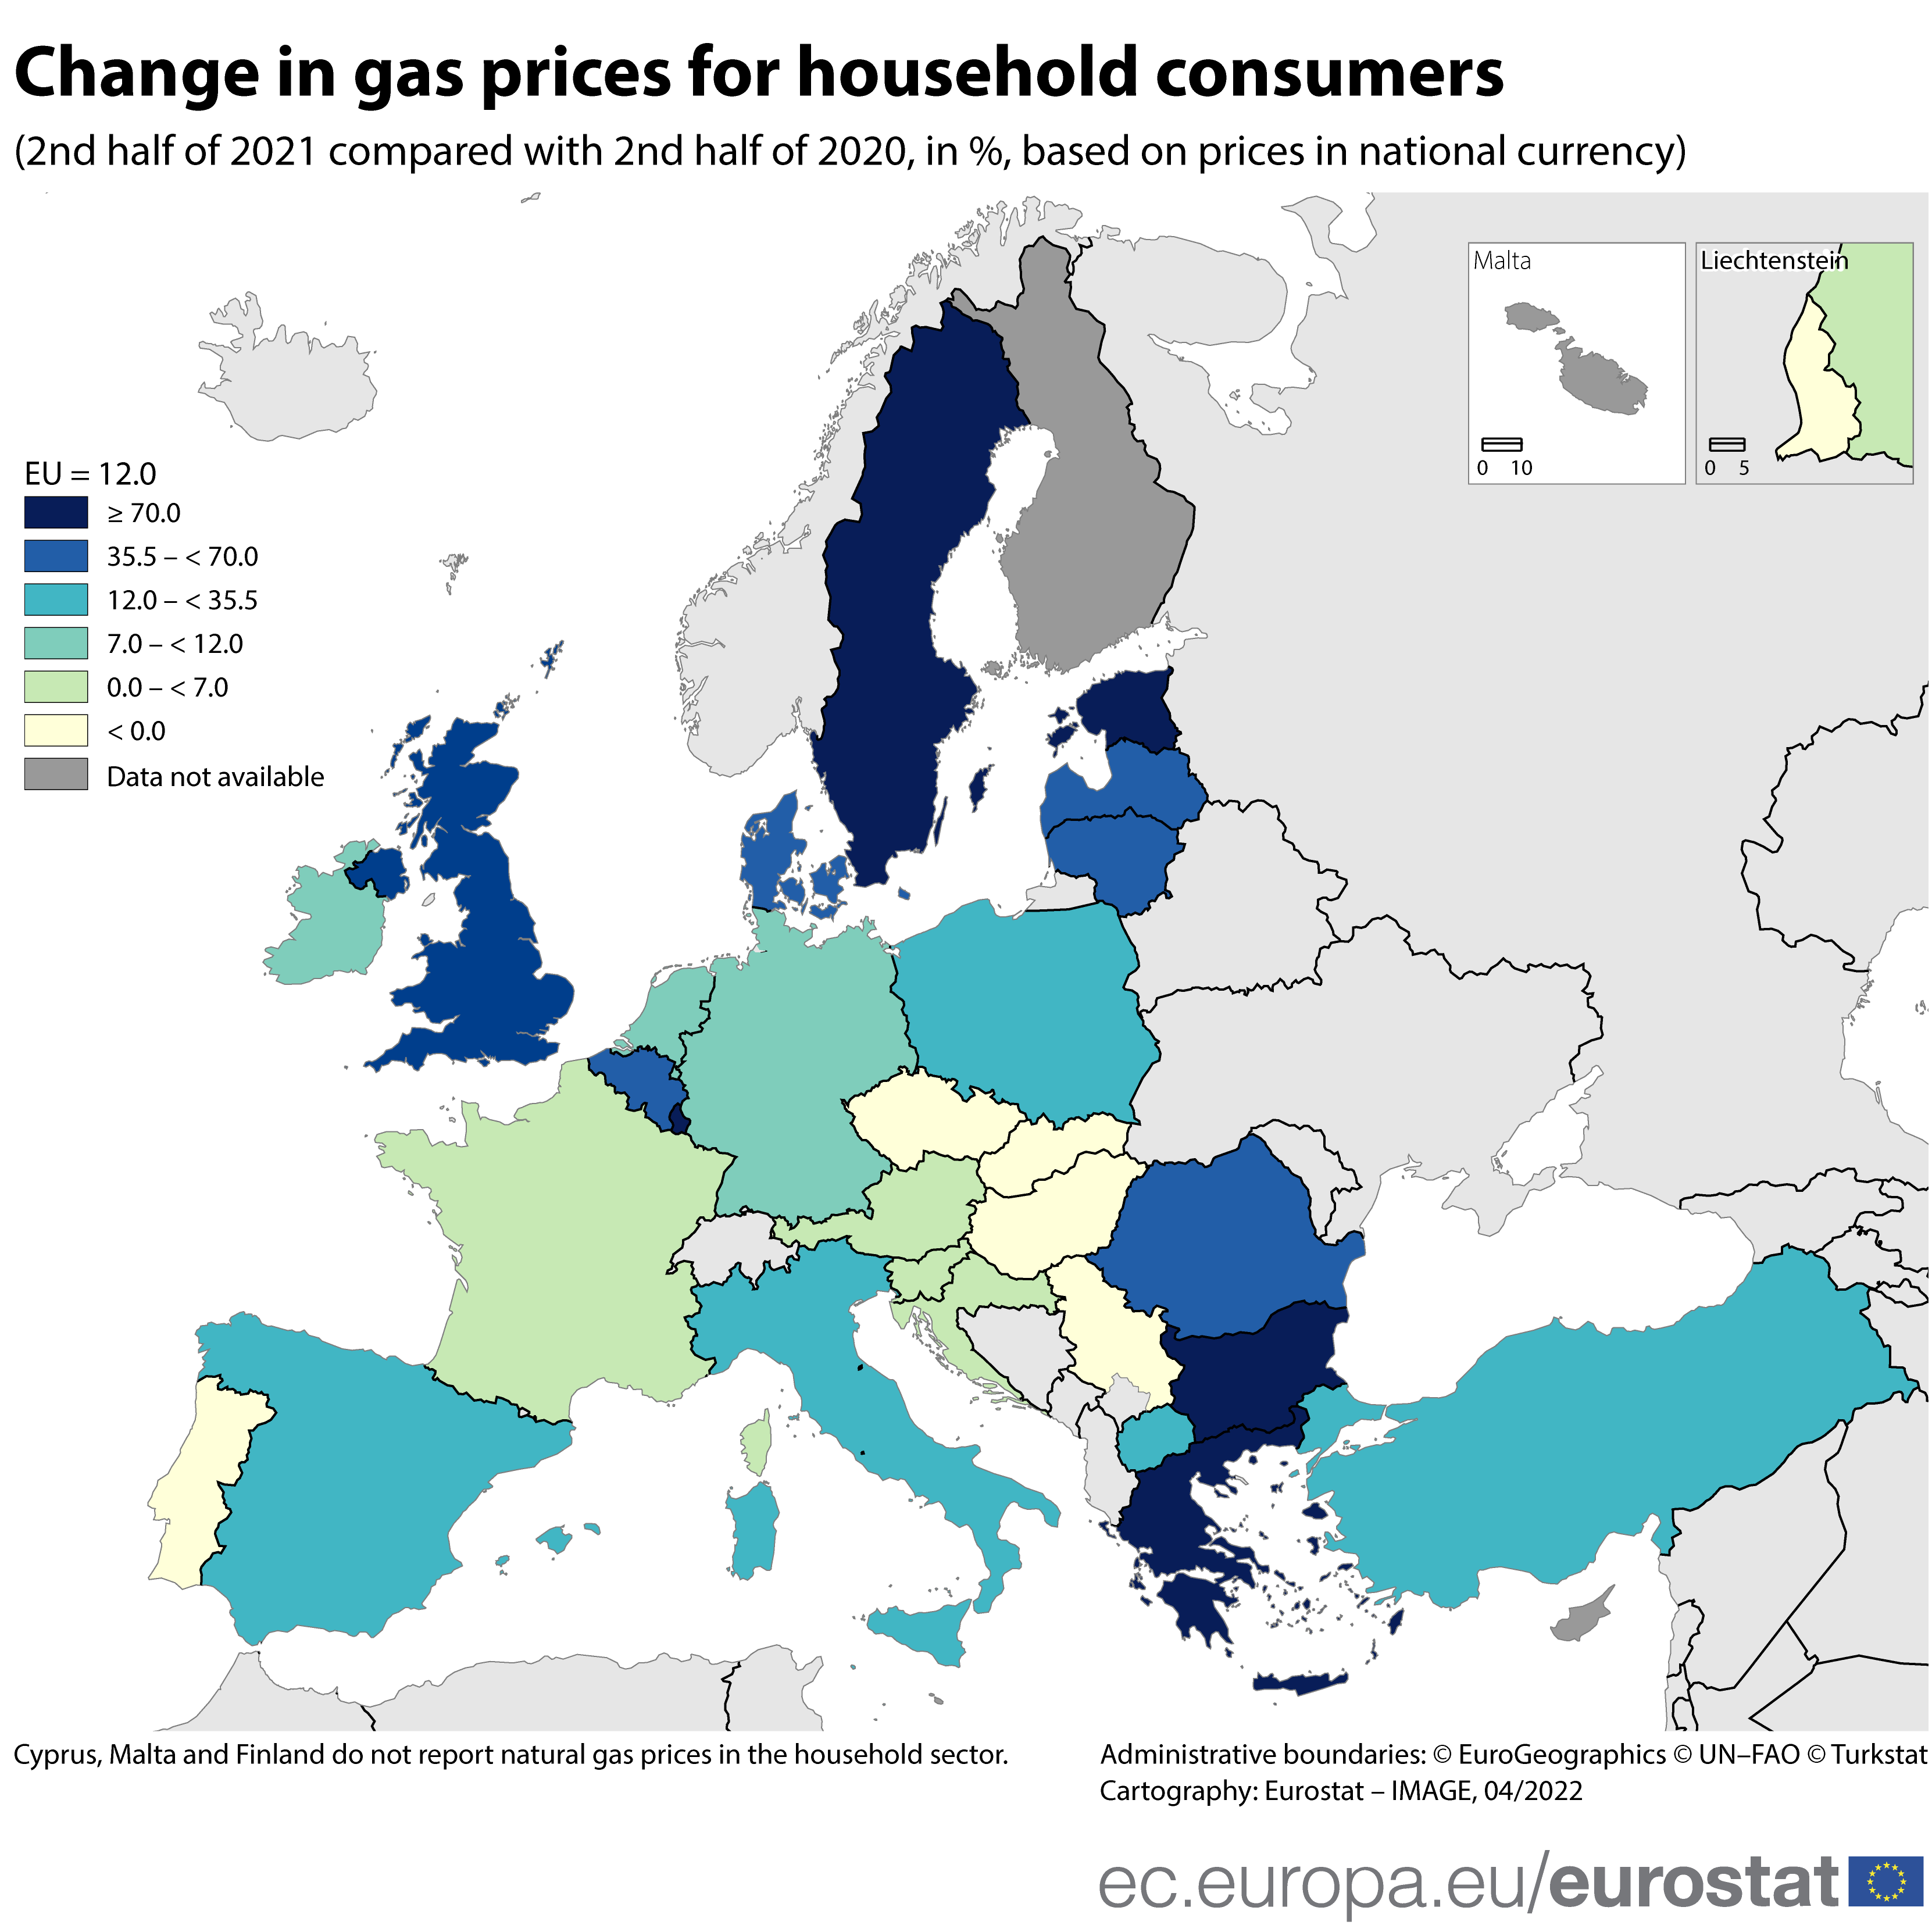 Carte : Évolution des prix du gaz pour les ménages, 2e semestre 2021 par rapport au 2e semestre 2020, en %, sur la base des prix en monnaie nationale, dans les pays de l'UE et de l'AELE